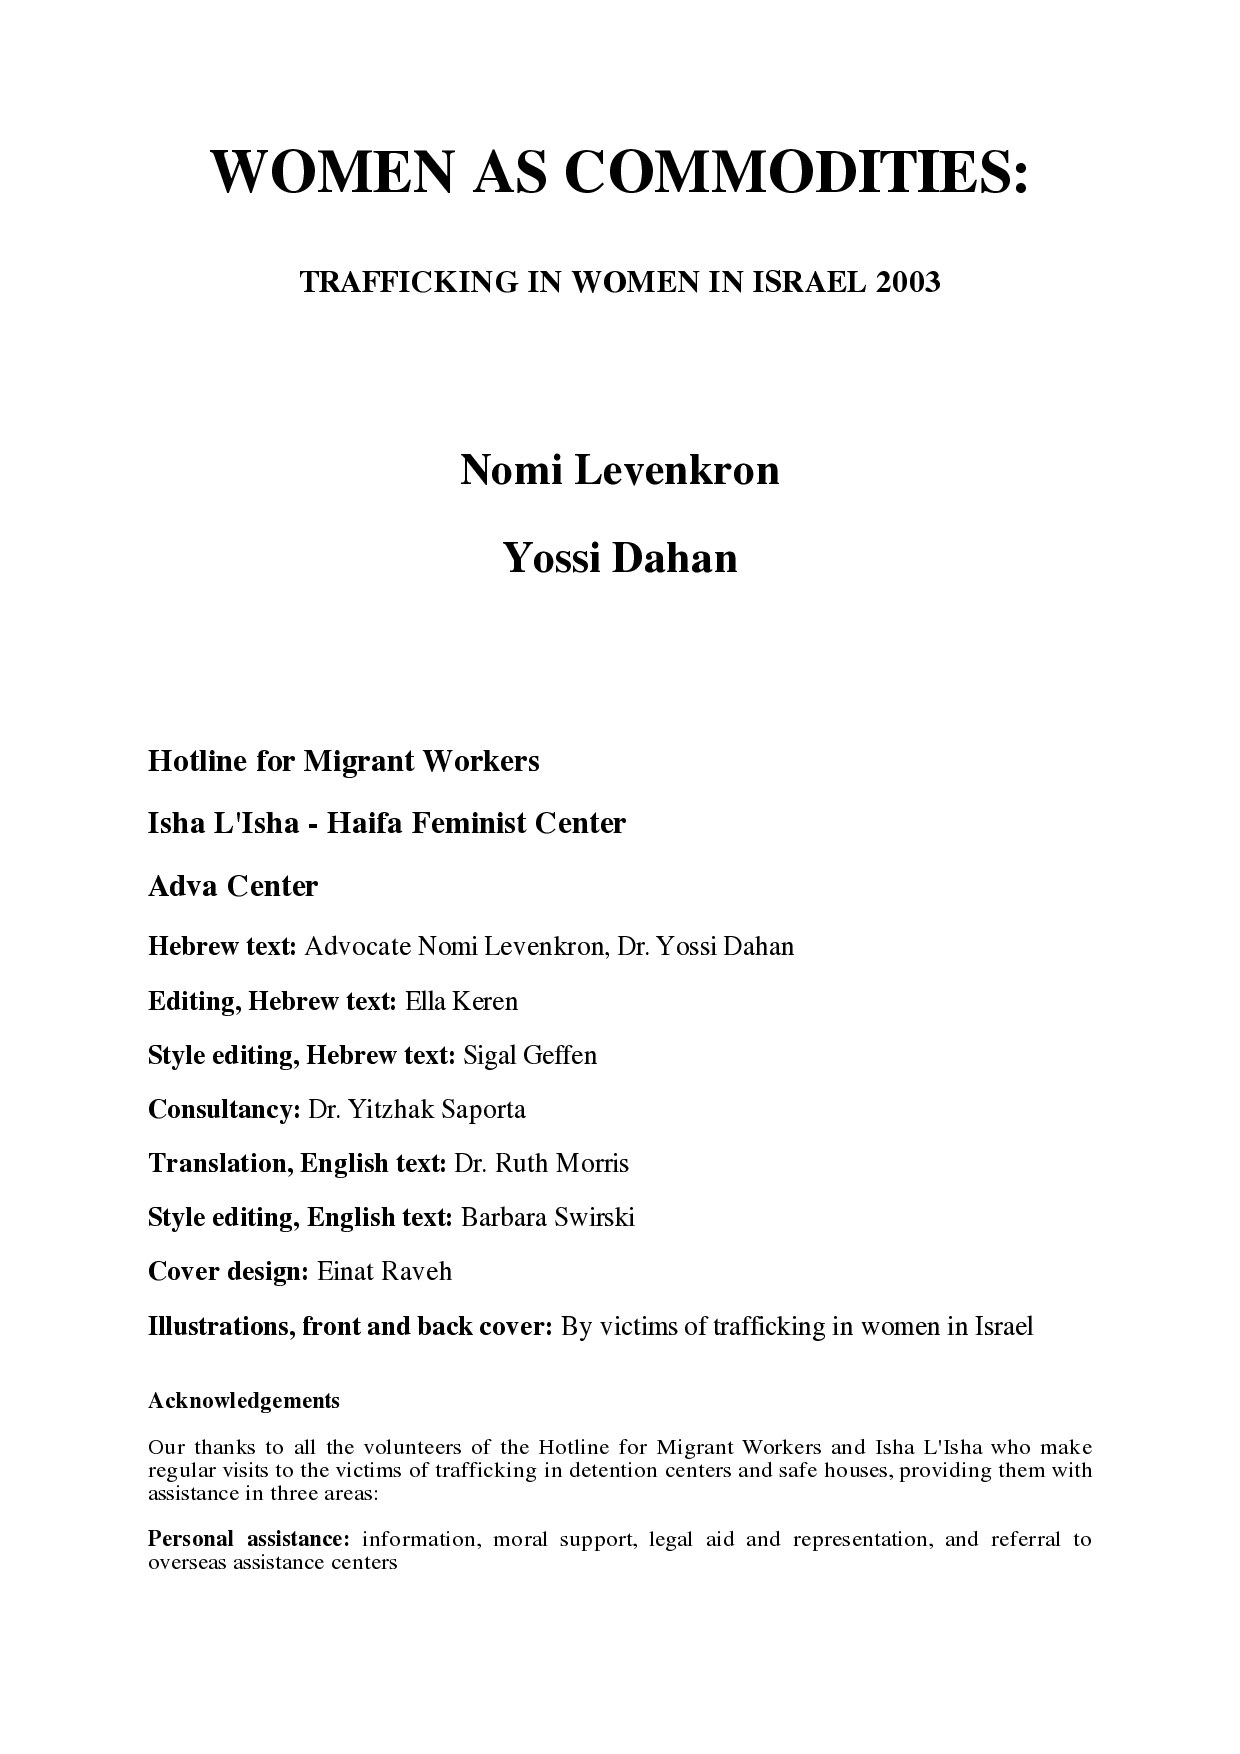 Levenkron, Nomi; Women As Commodities - Trafficking In Women In Israel 2003